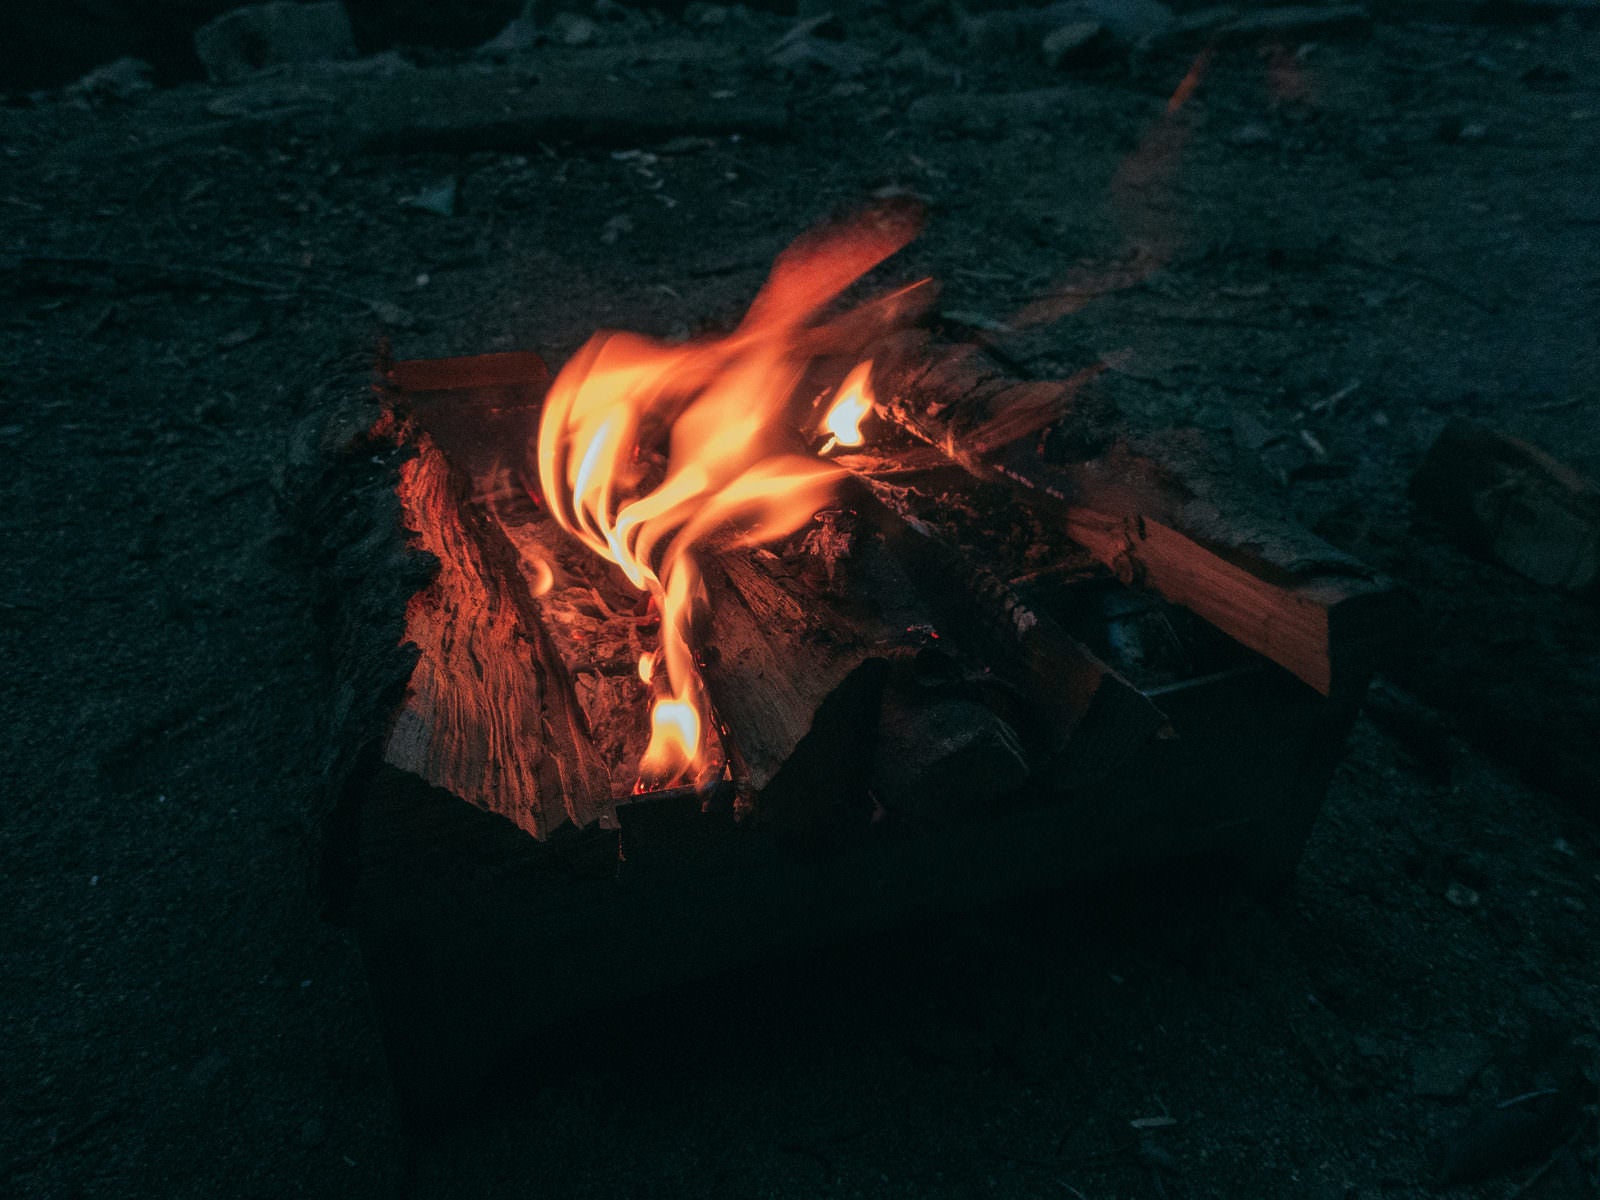 「暗がりのキャンプファイヤーの炎」の写真